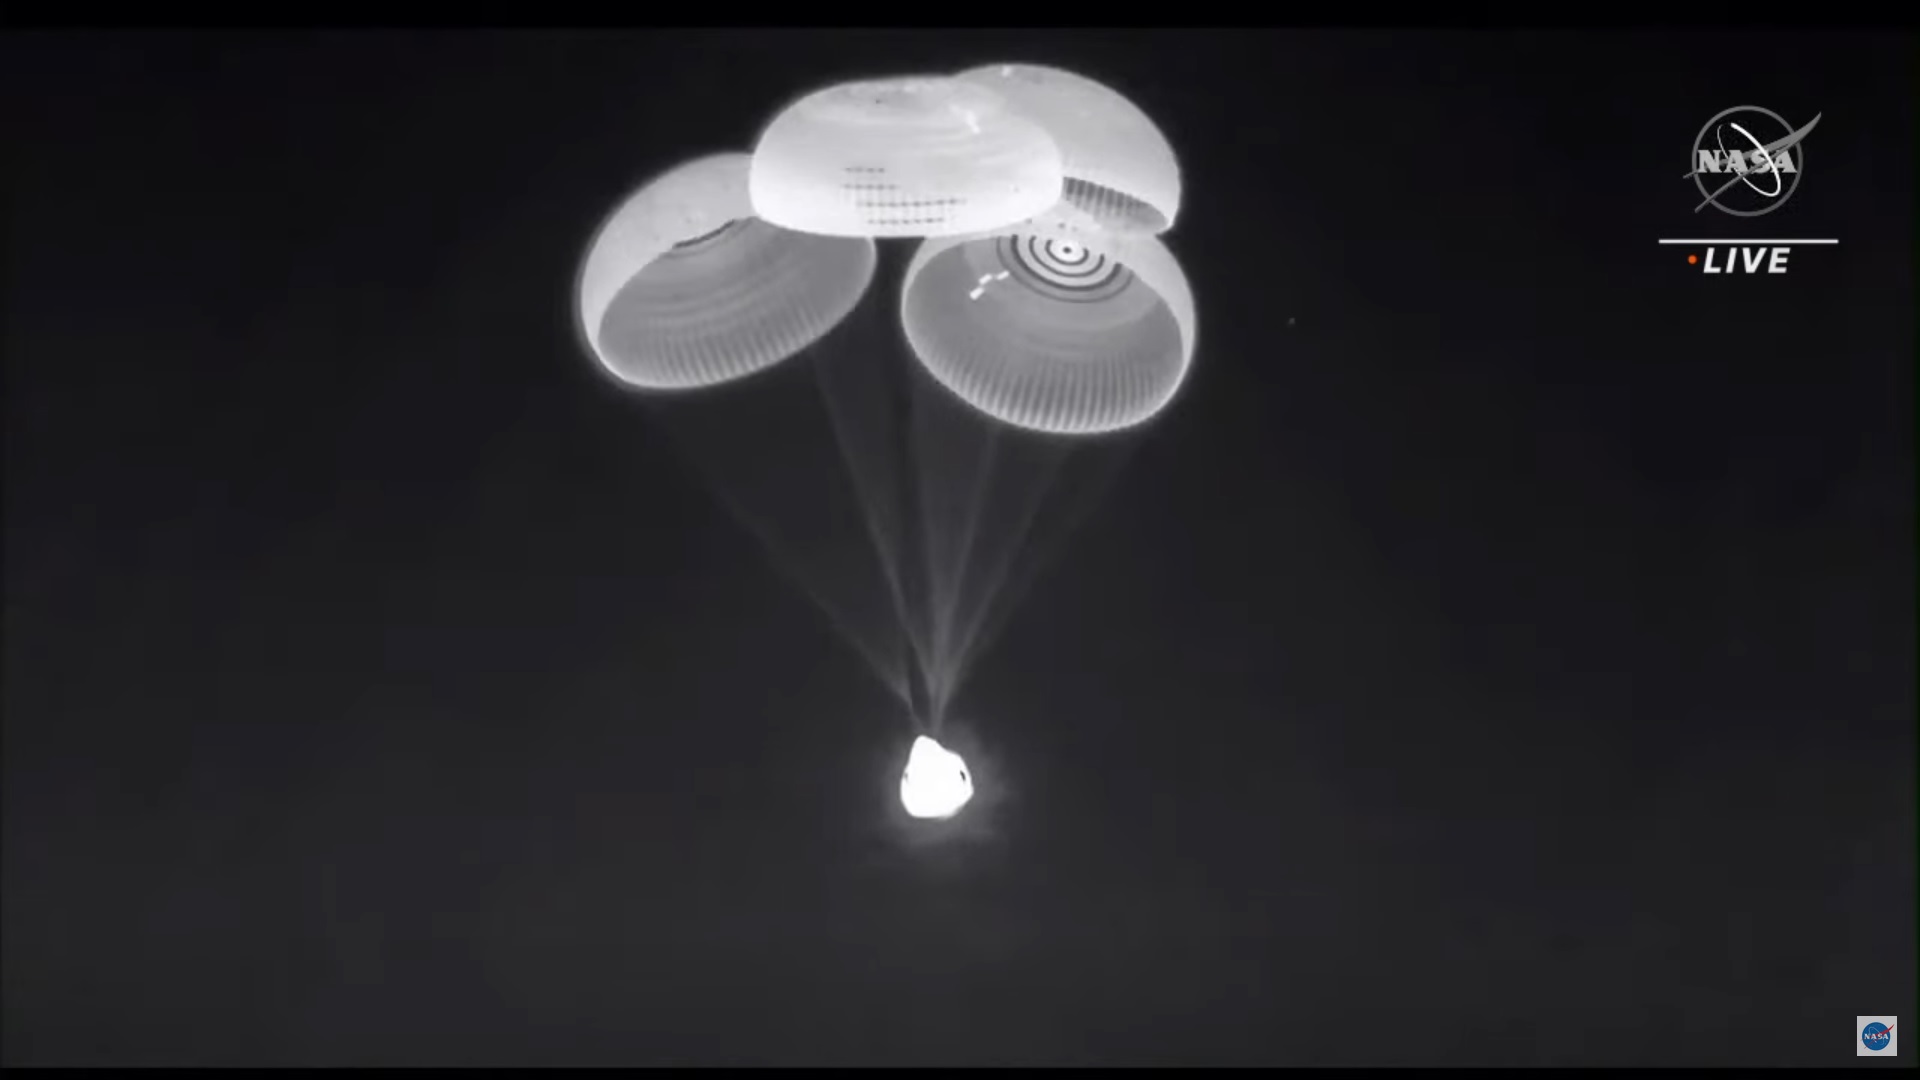 Kapsuła Dragon 2 Endeavour po otwarciu spadochronów przed wodowaniem w ramach misji Crew-2 (Źródło: SpaceX/NASA)